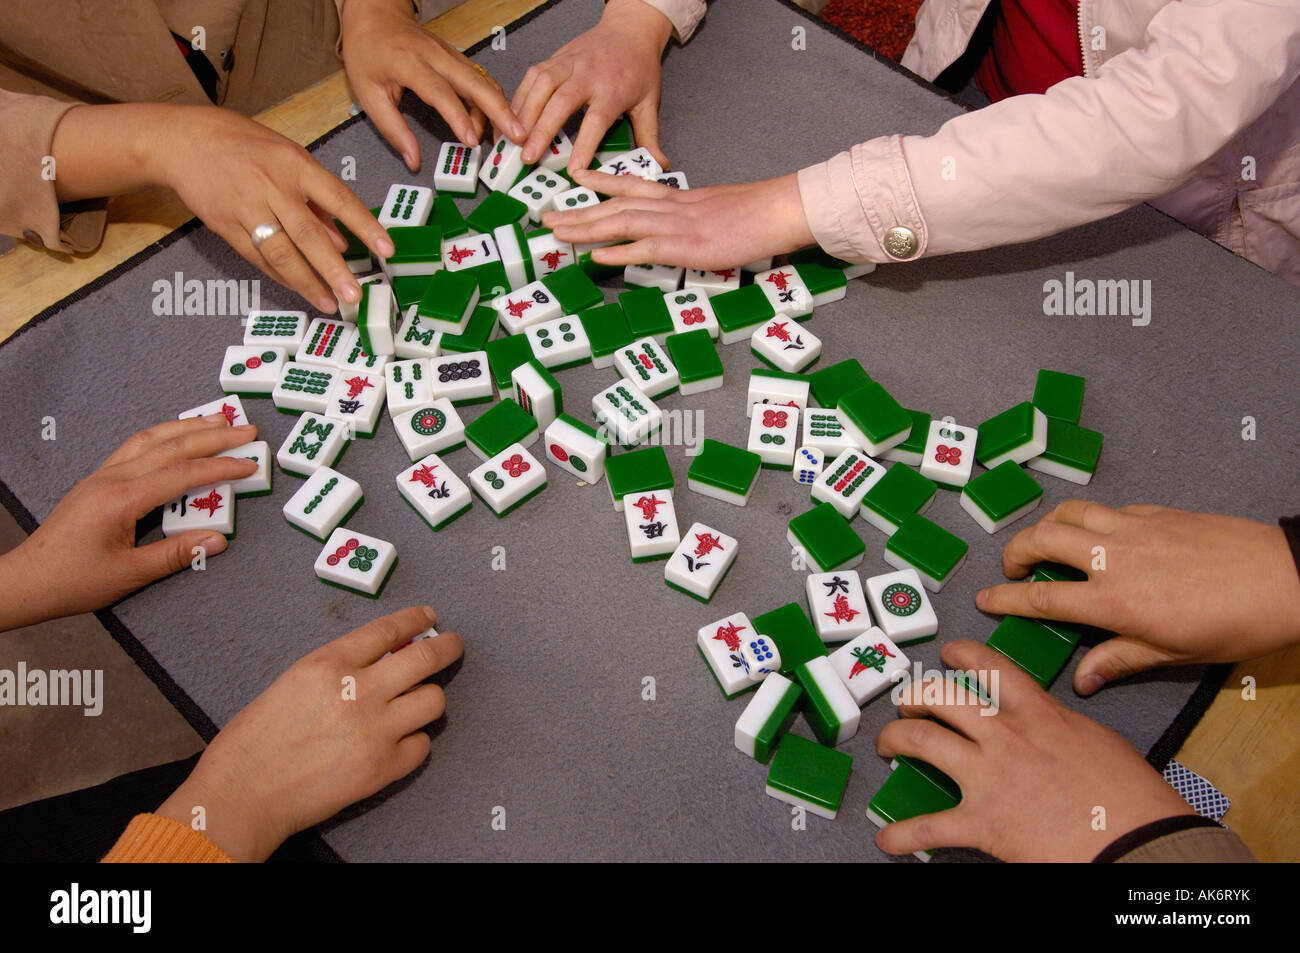 Làm thế nào để thưởng thức Mahjong như thật? Với những bộ gạch đá sáng bóng và tinh tế, bạn sẽ có cơ hội thực sự yêu thích trò chơi hấp dẫn này. Hãy cùng xem hình ảnh và khám phá tuyệt đẹp những chi tiết trên bàn cờ Mahjong đầy mê hoặc!